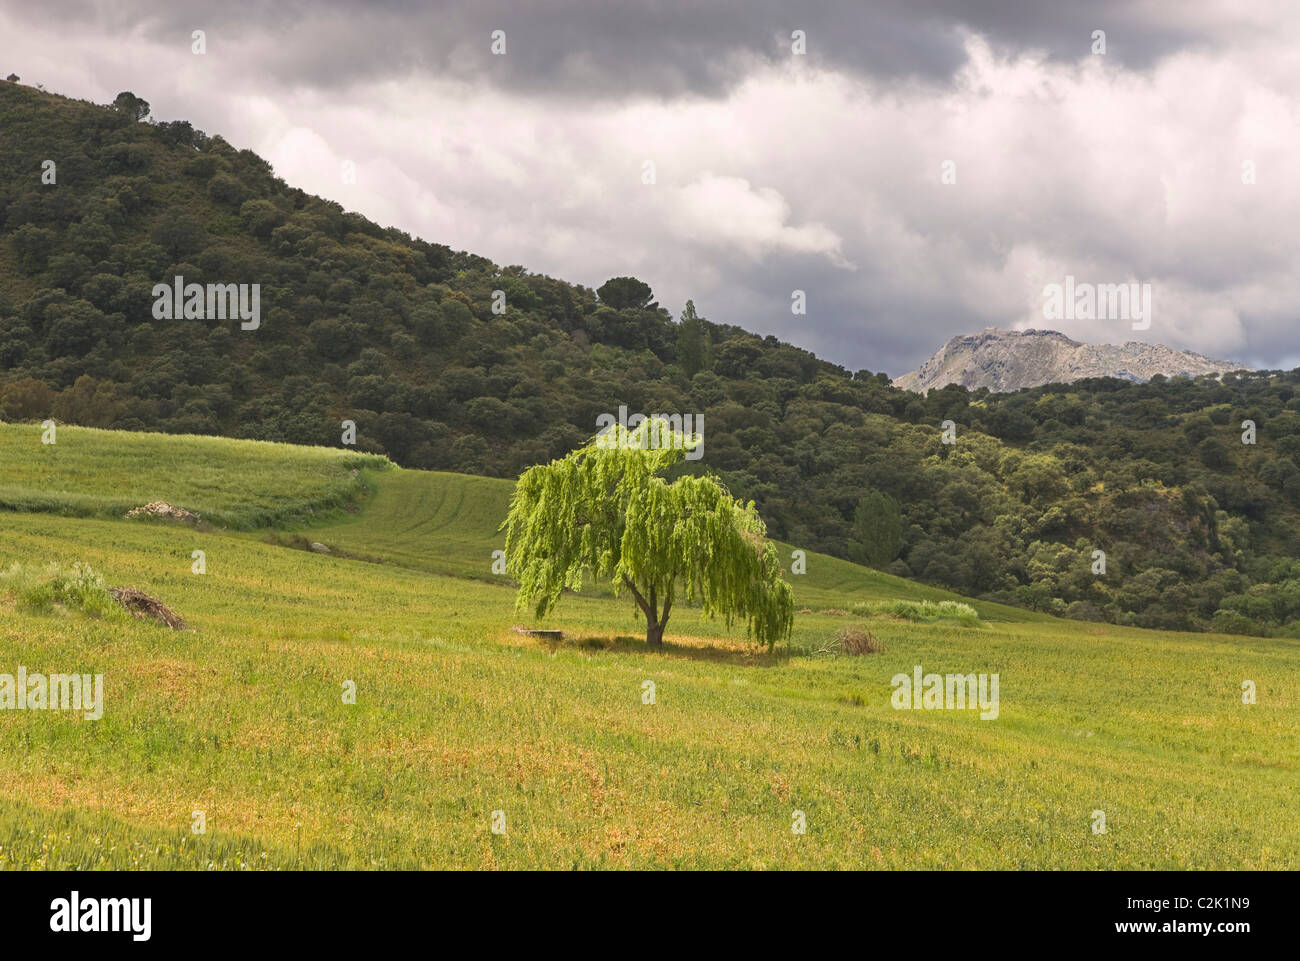 Serrania de Ronda, Province de Malaga, Espagne ; arbre isolé dans la campagne Banque D'Images